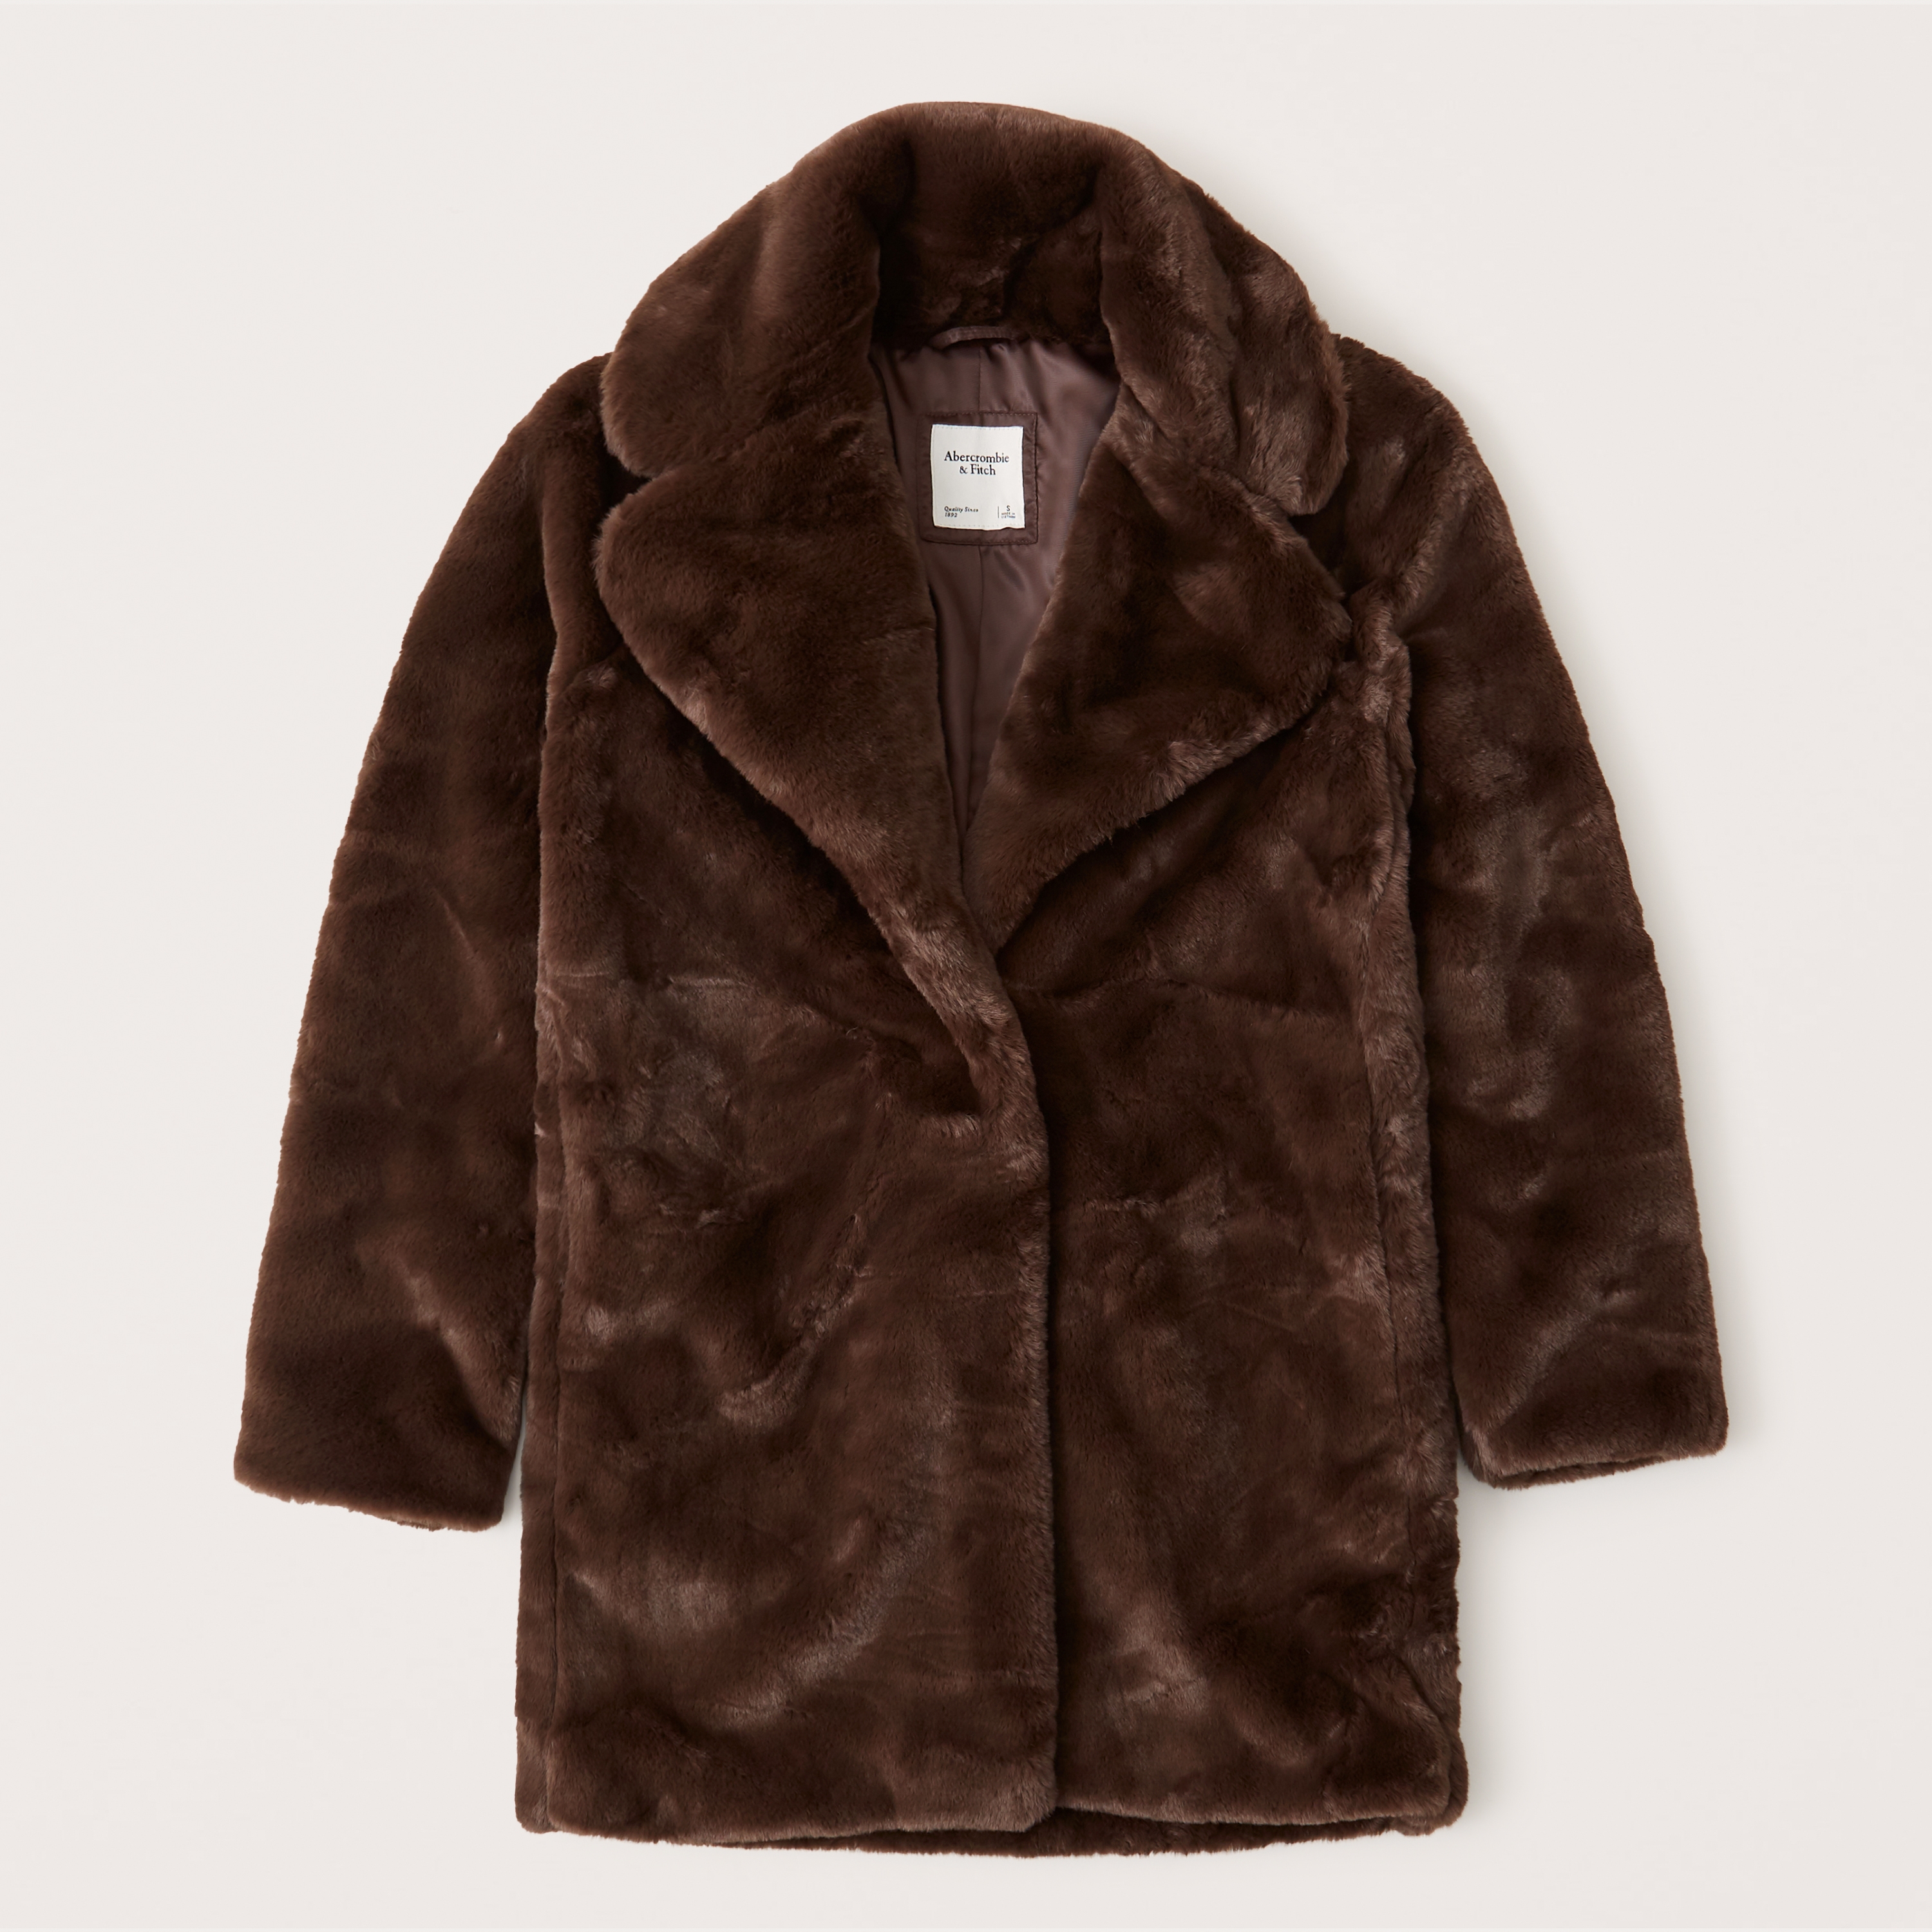 abercrombie fur coat